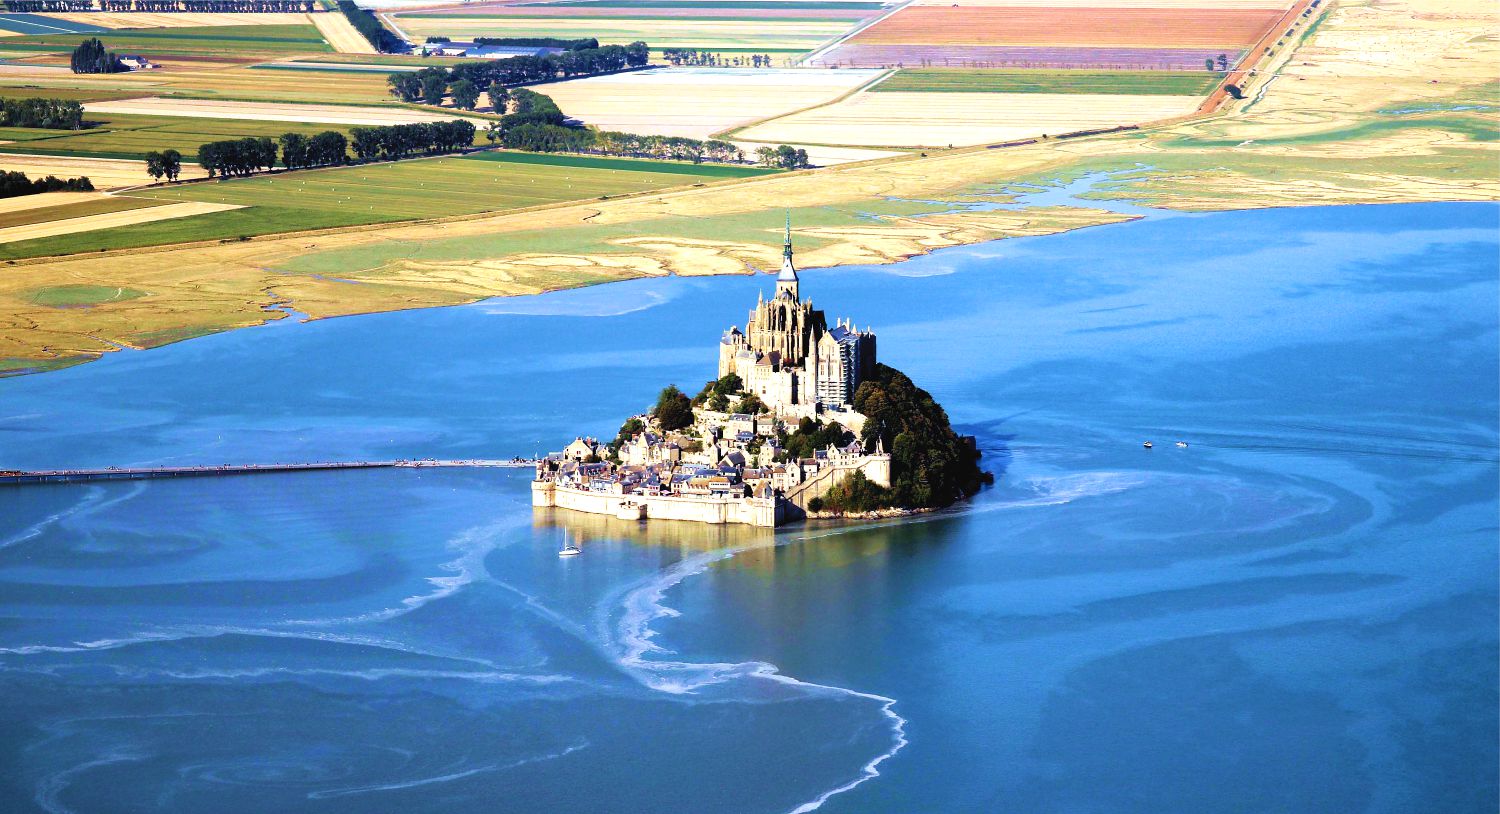 Khám phá Mont Saint Michel - biểu tượng của người Pháp về sự kiên cường và tự do  - Ảnh 3.